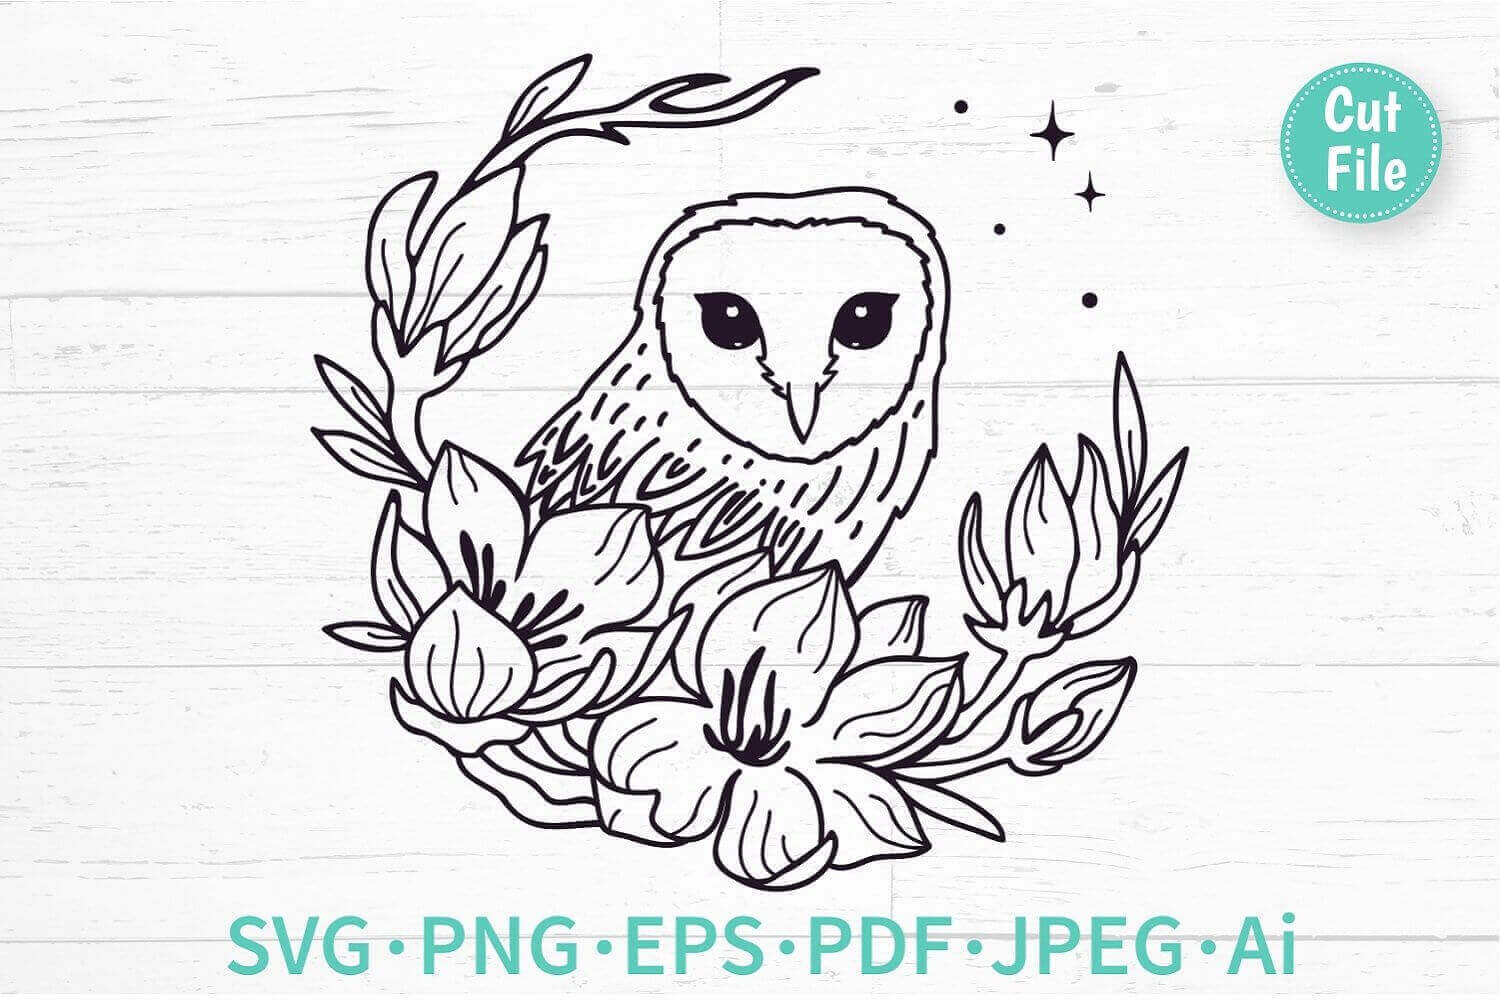 Boho Owl with Flowers SVG, PNG, EPS, PDF, JPEG, AI.